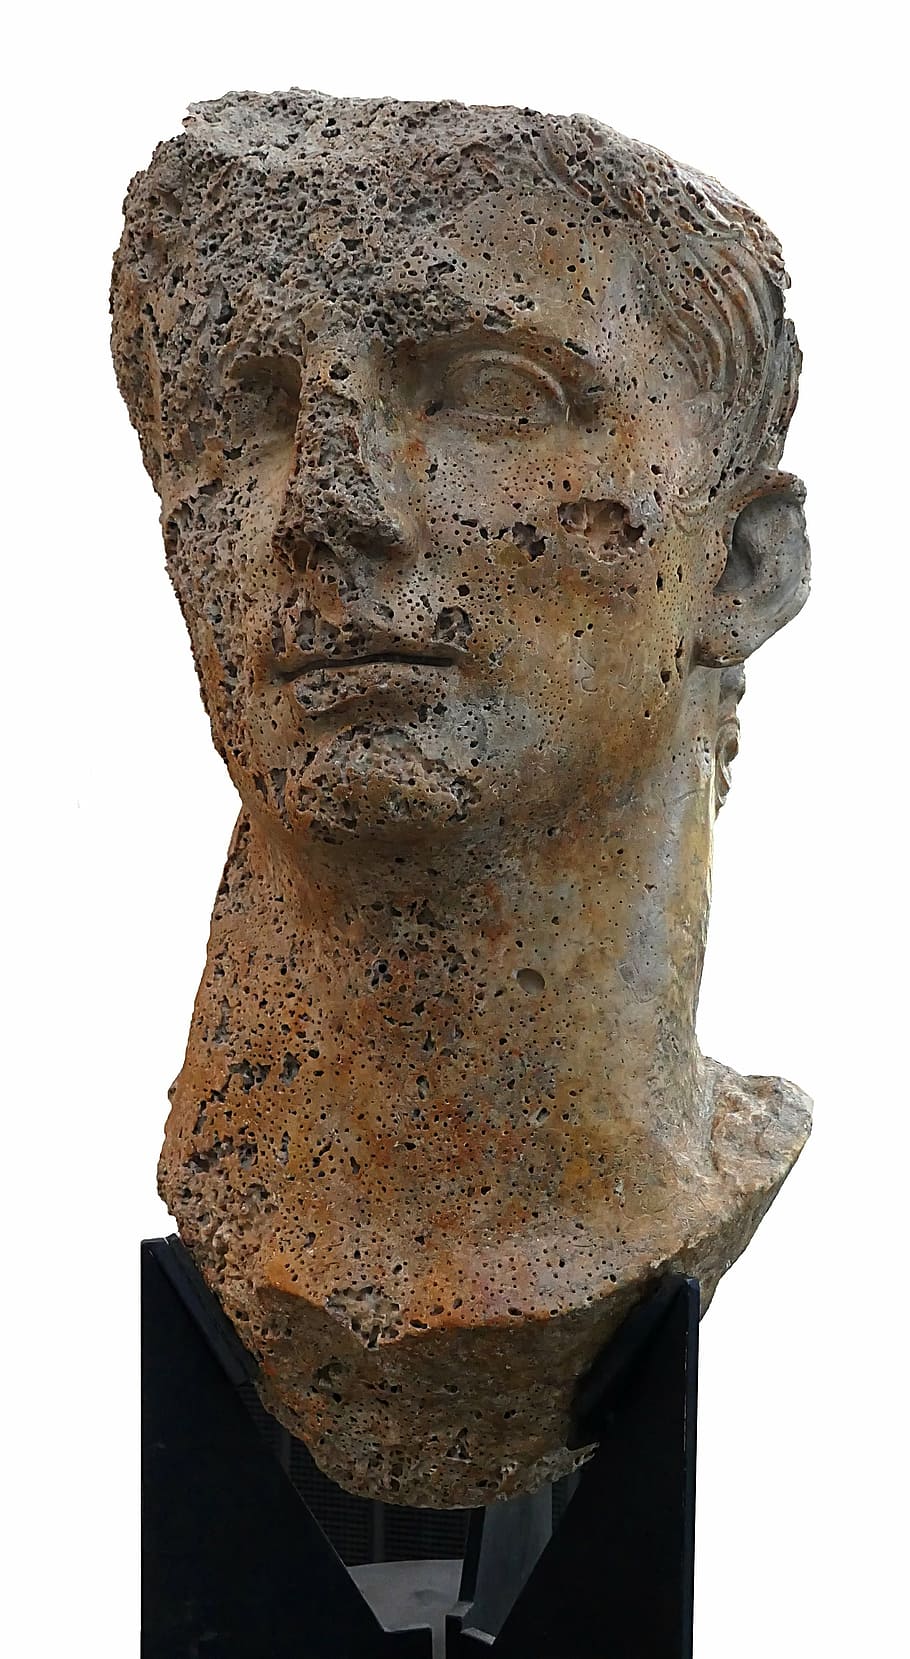 augustus caesar, romano, imperador, museu, arqueologia, cabeça, colossal, escultura, fundo branco, representação humana